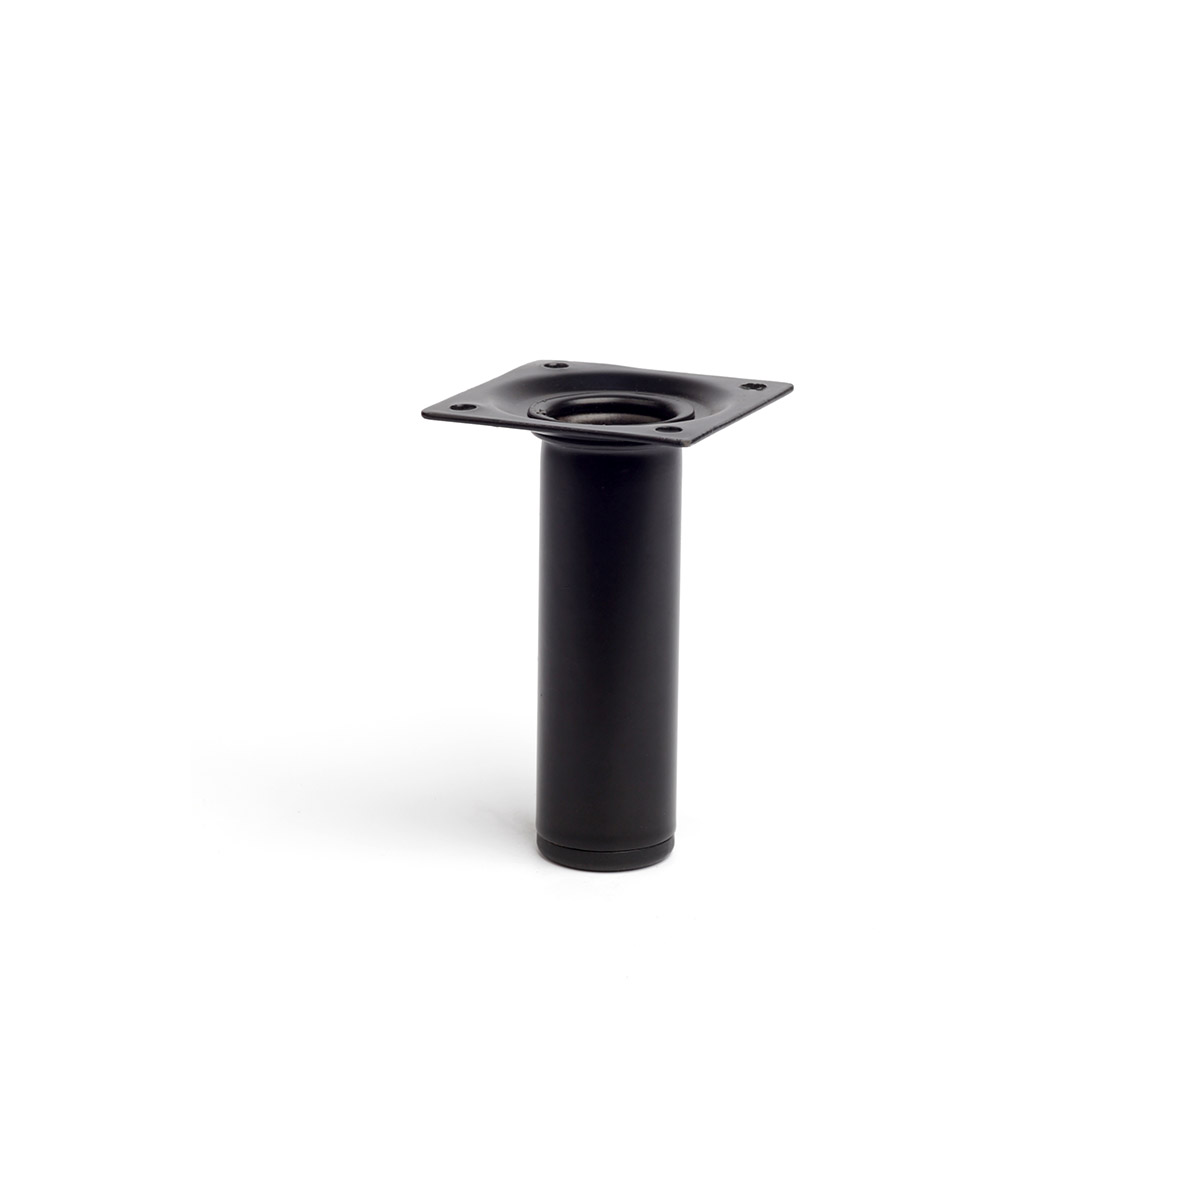 Pied cylindrique en acier d'une hauteur de 100 mm et finition noir. Dimensions: 30x30x100 mm